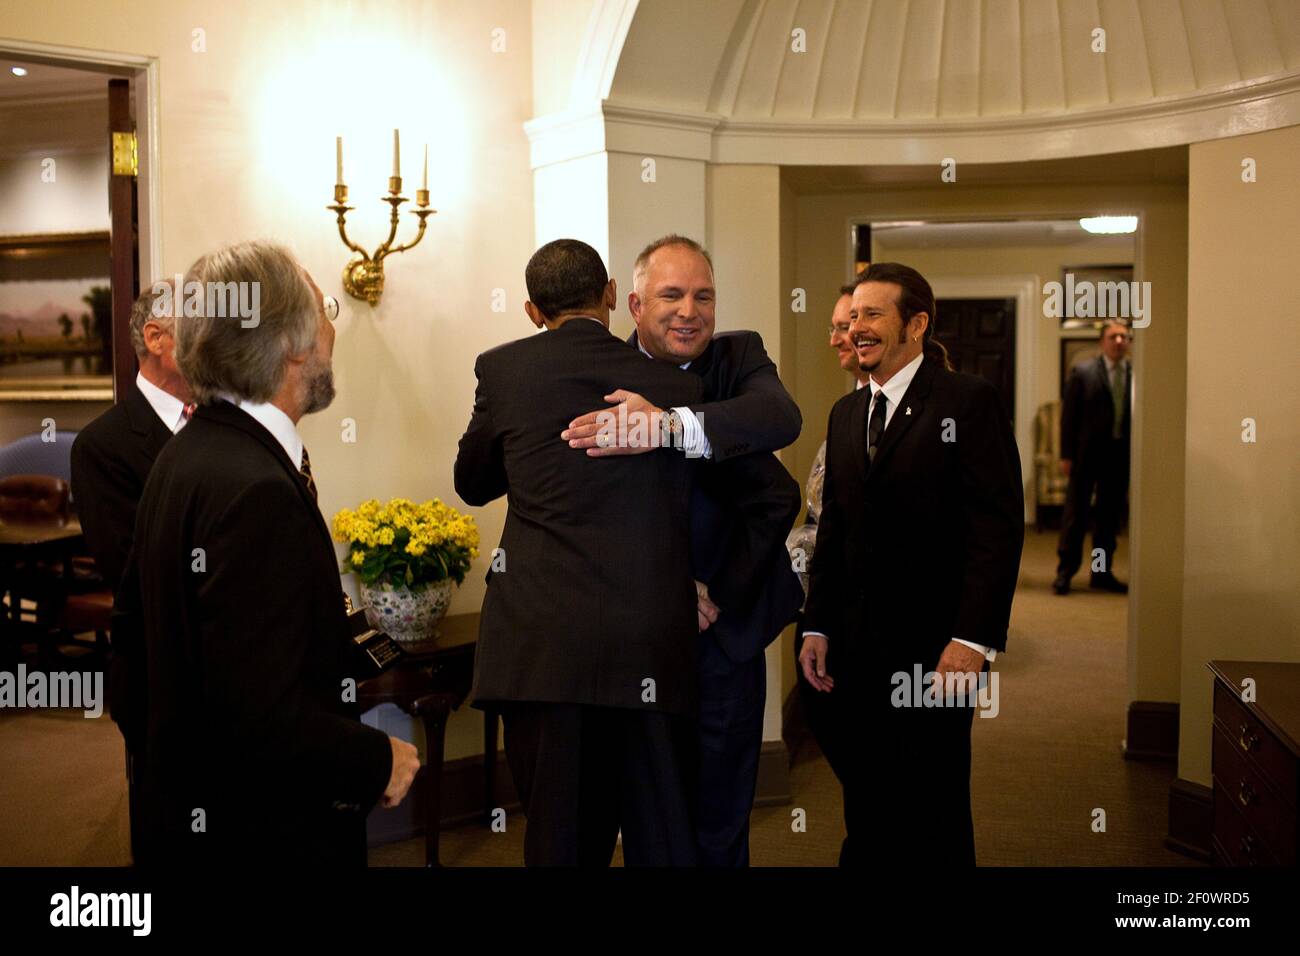 Le président Barack Obama encadre l'artiste de musique country Garth Brooks dans un couloir de l'aile ouest à la Maison Blanche, le 14 avril 2010. Banque D'Images